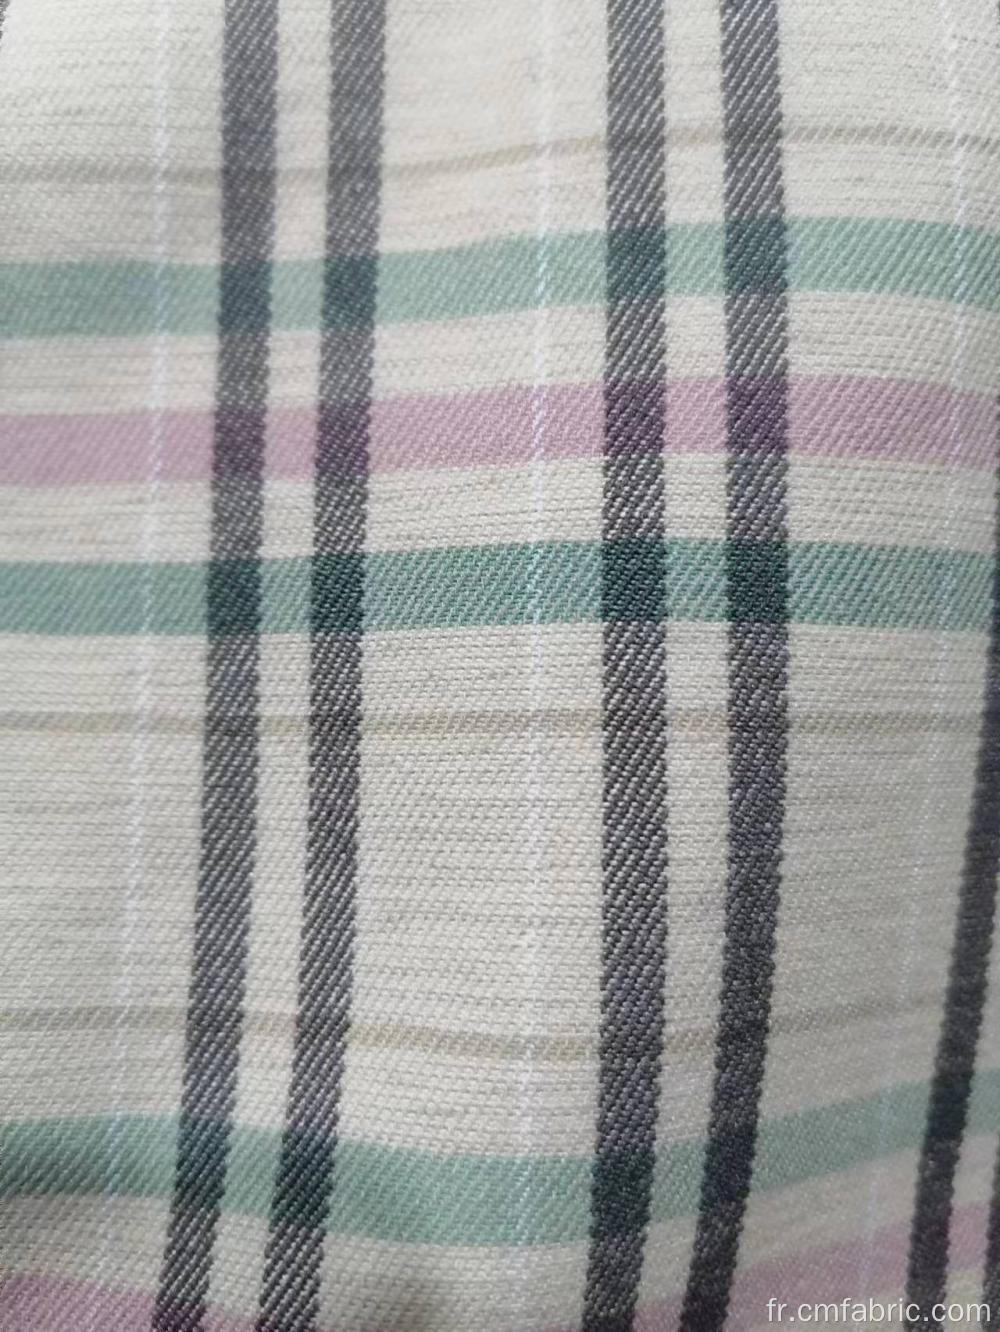 Rayon Nylon Spandex Bengaline Yarn Dyed Check Match Fabric